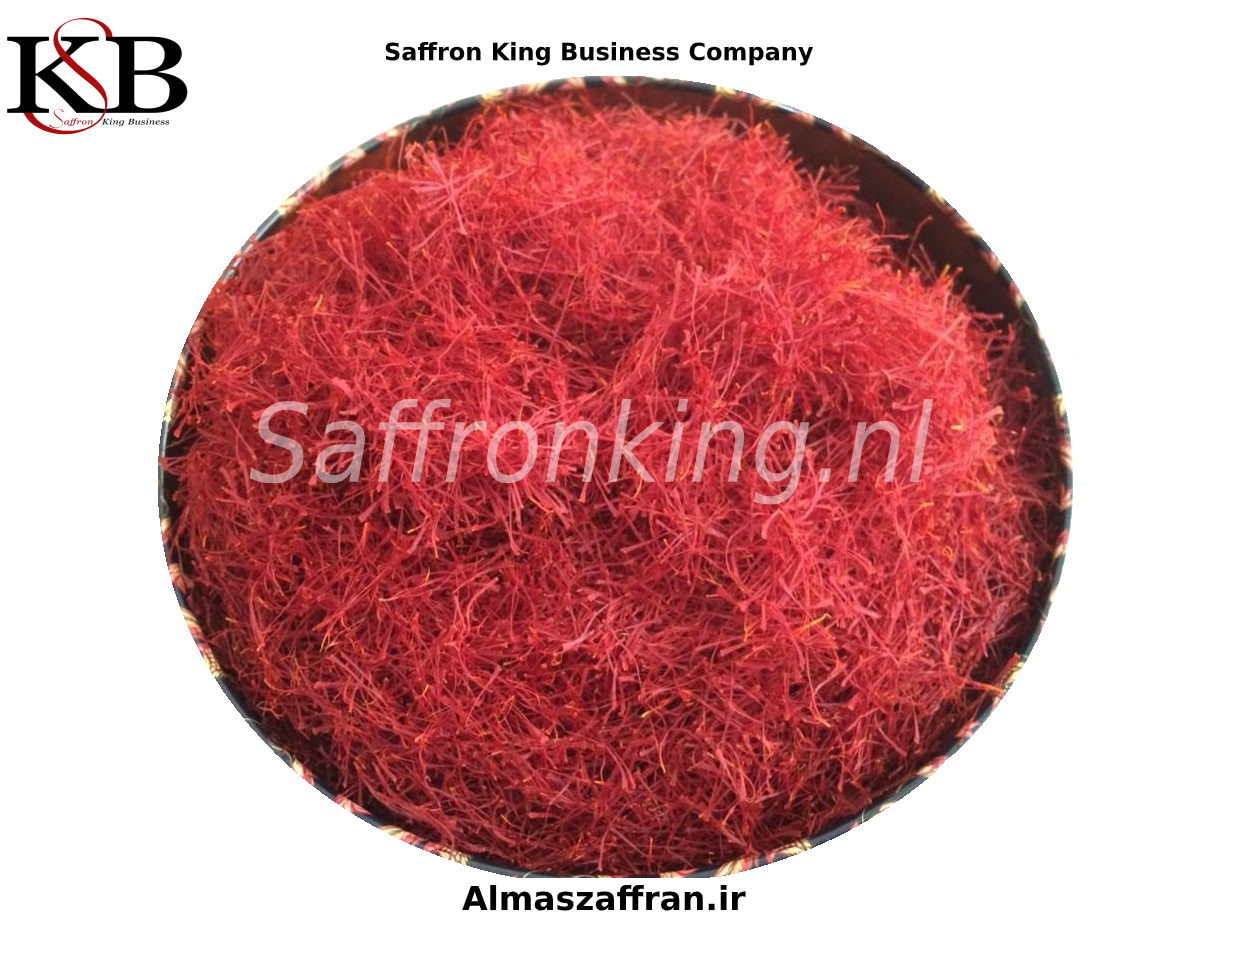 buy-best-quality-saffron